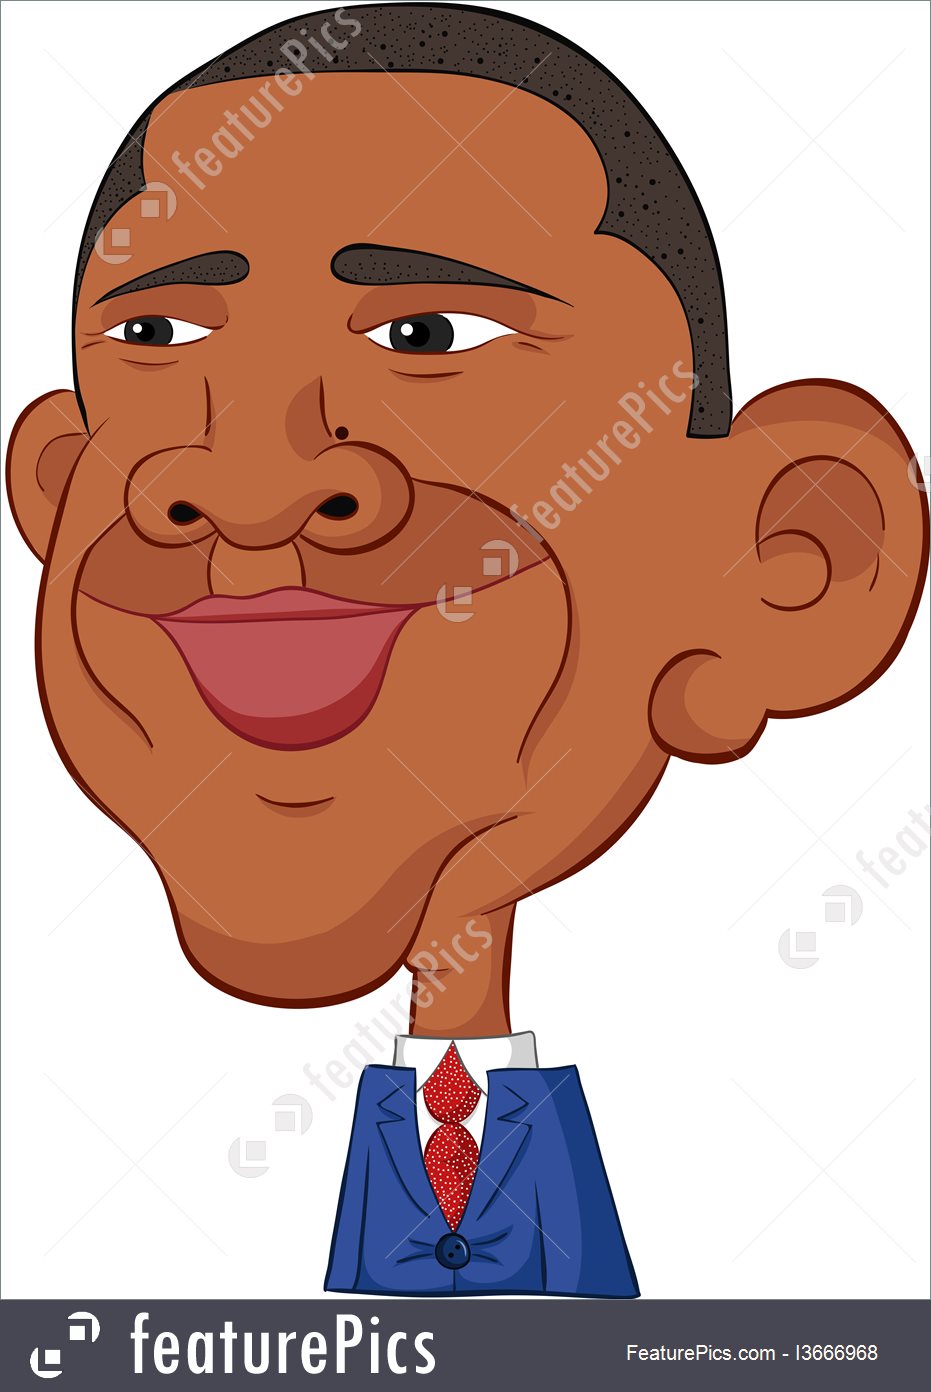 Obamau0027s smile - csp140172